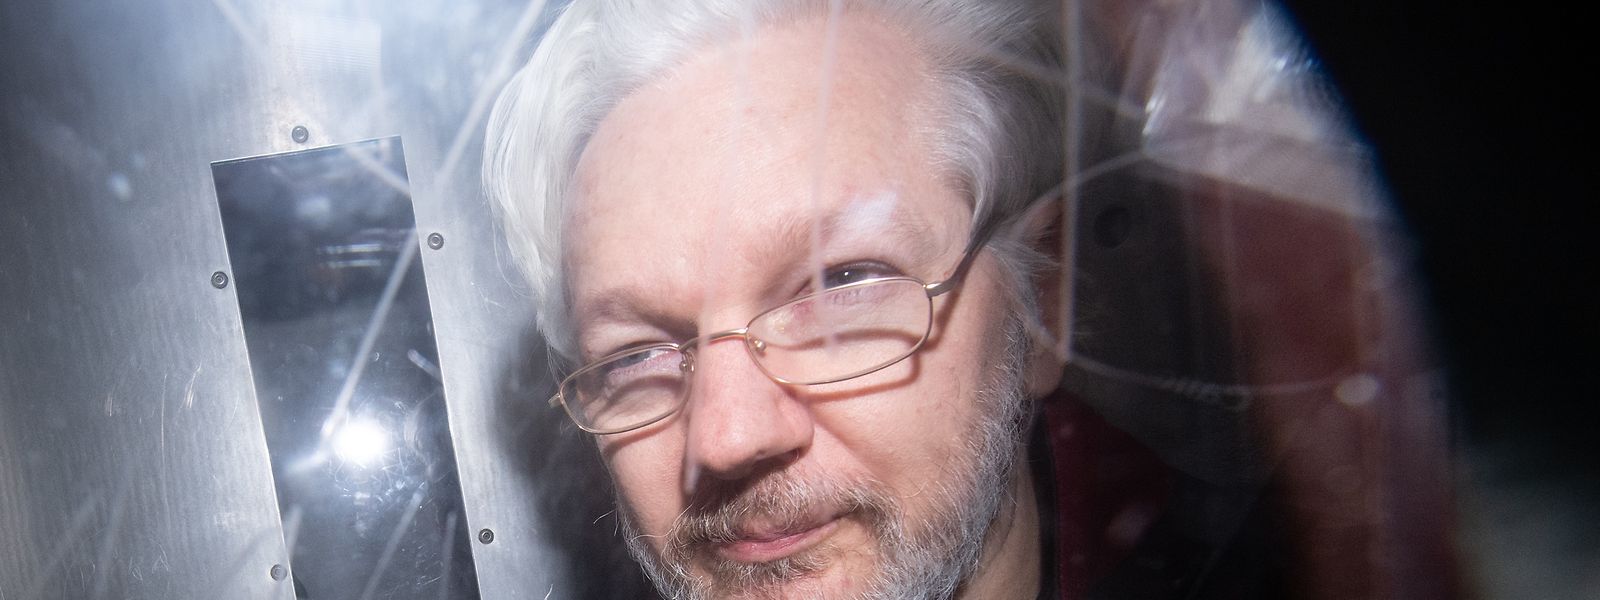 Le fondateur de WikiLeaks, âgé de 50 ans, n'était pas présent physiquement au tribunal mais a suivi la procédure administrative par liaison vidéo.